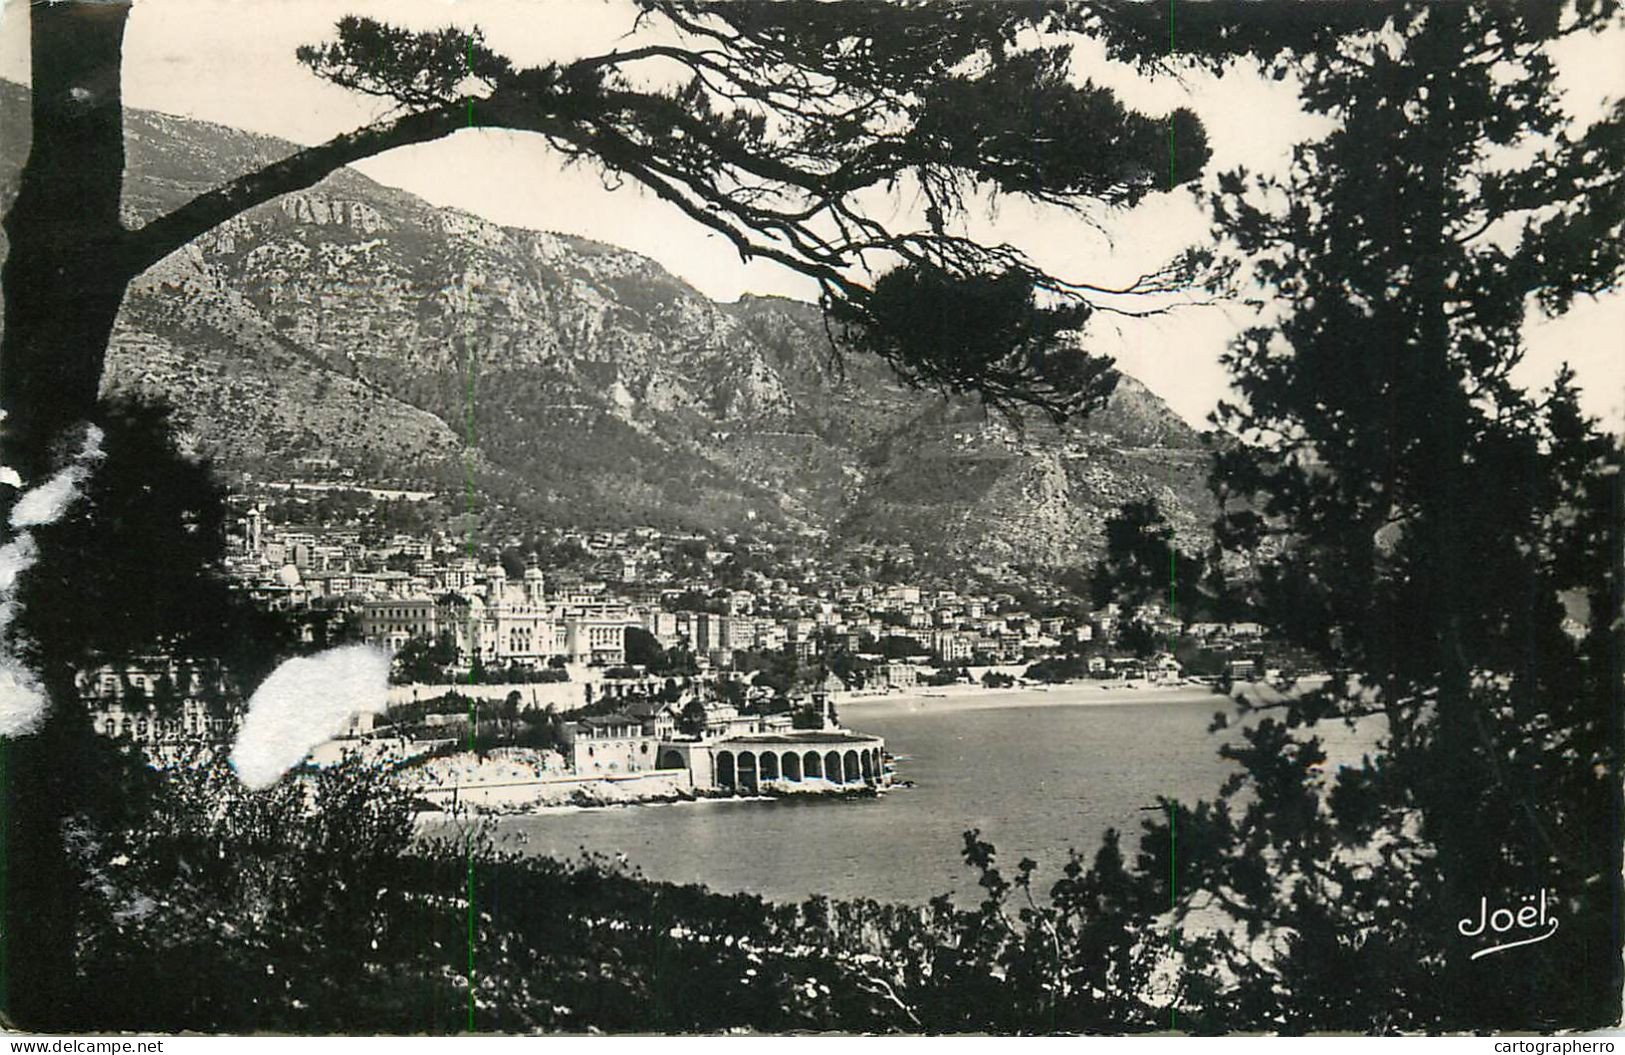 Postcard Monaco Monte Carlo Rocher De Monaco 1951 - Monte-Carlo